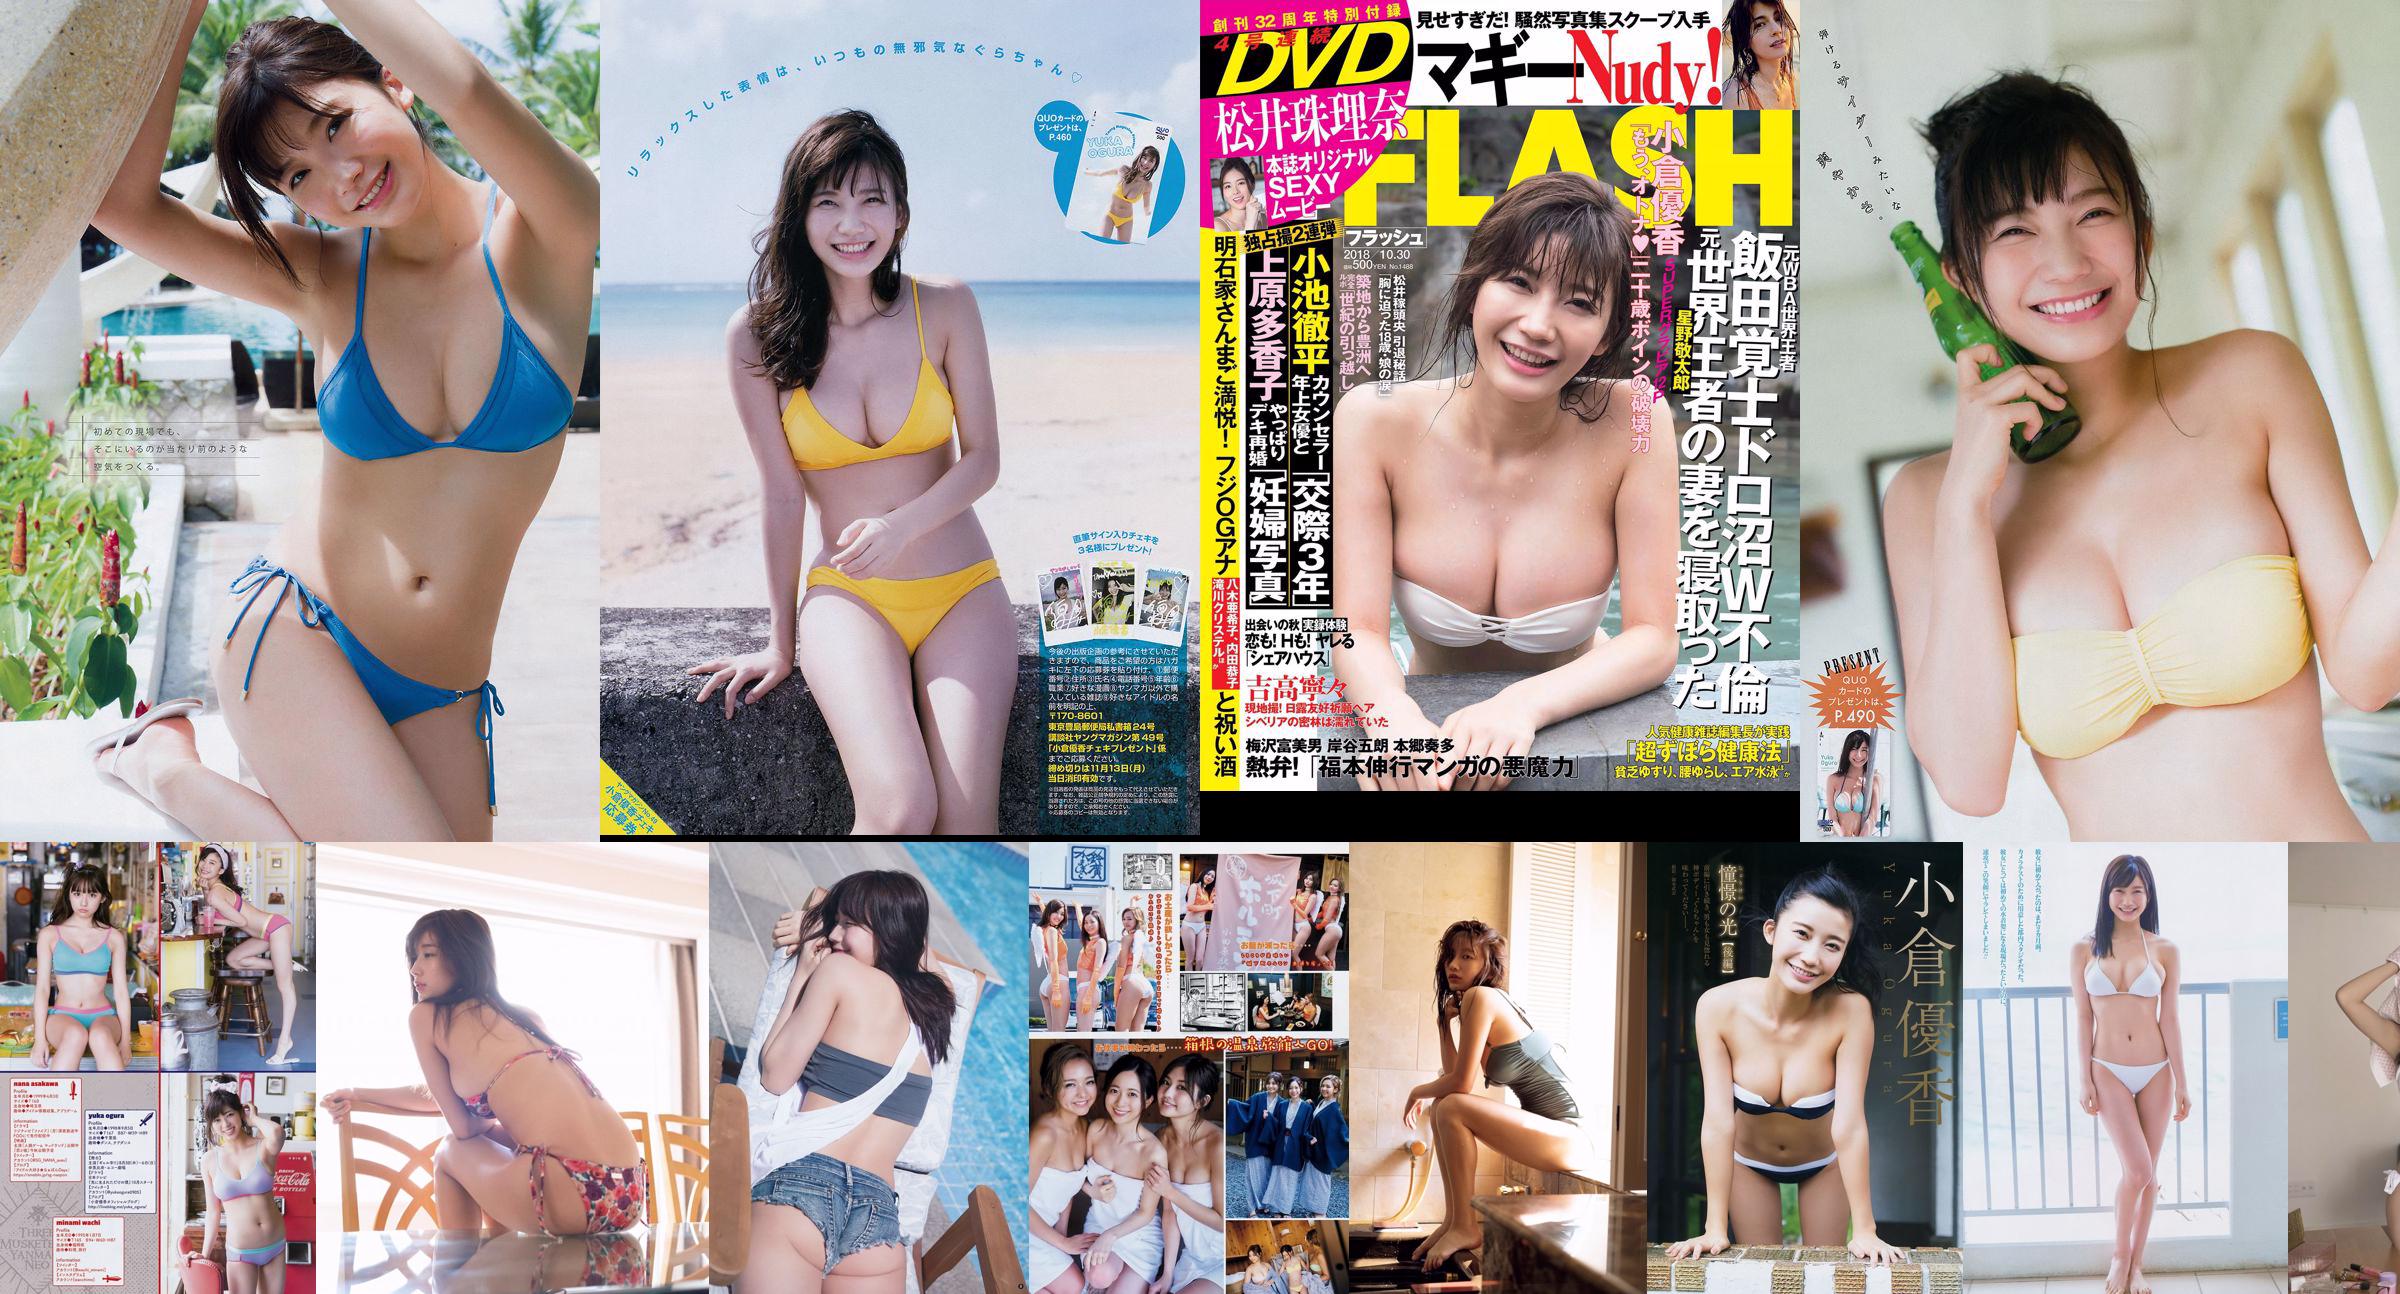 Ogura Yuka Fujino Shiho Aoi Wakana Oen Momoko Maki Segnalibro Oyama Hikaru [Weekly Playboy] 2017 No.43 Photo Magazine No.980562 Pagina 1